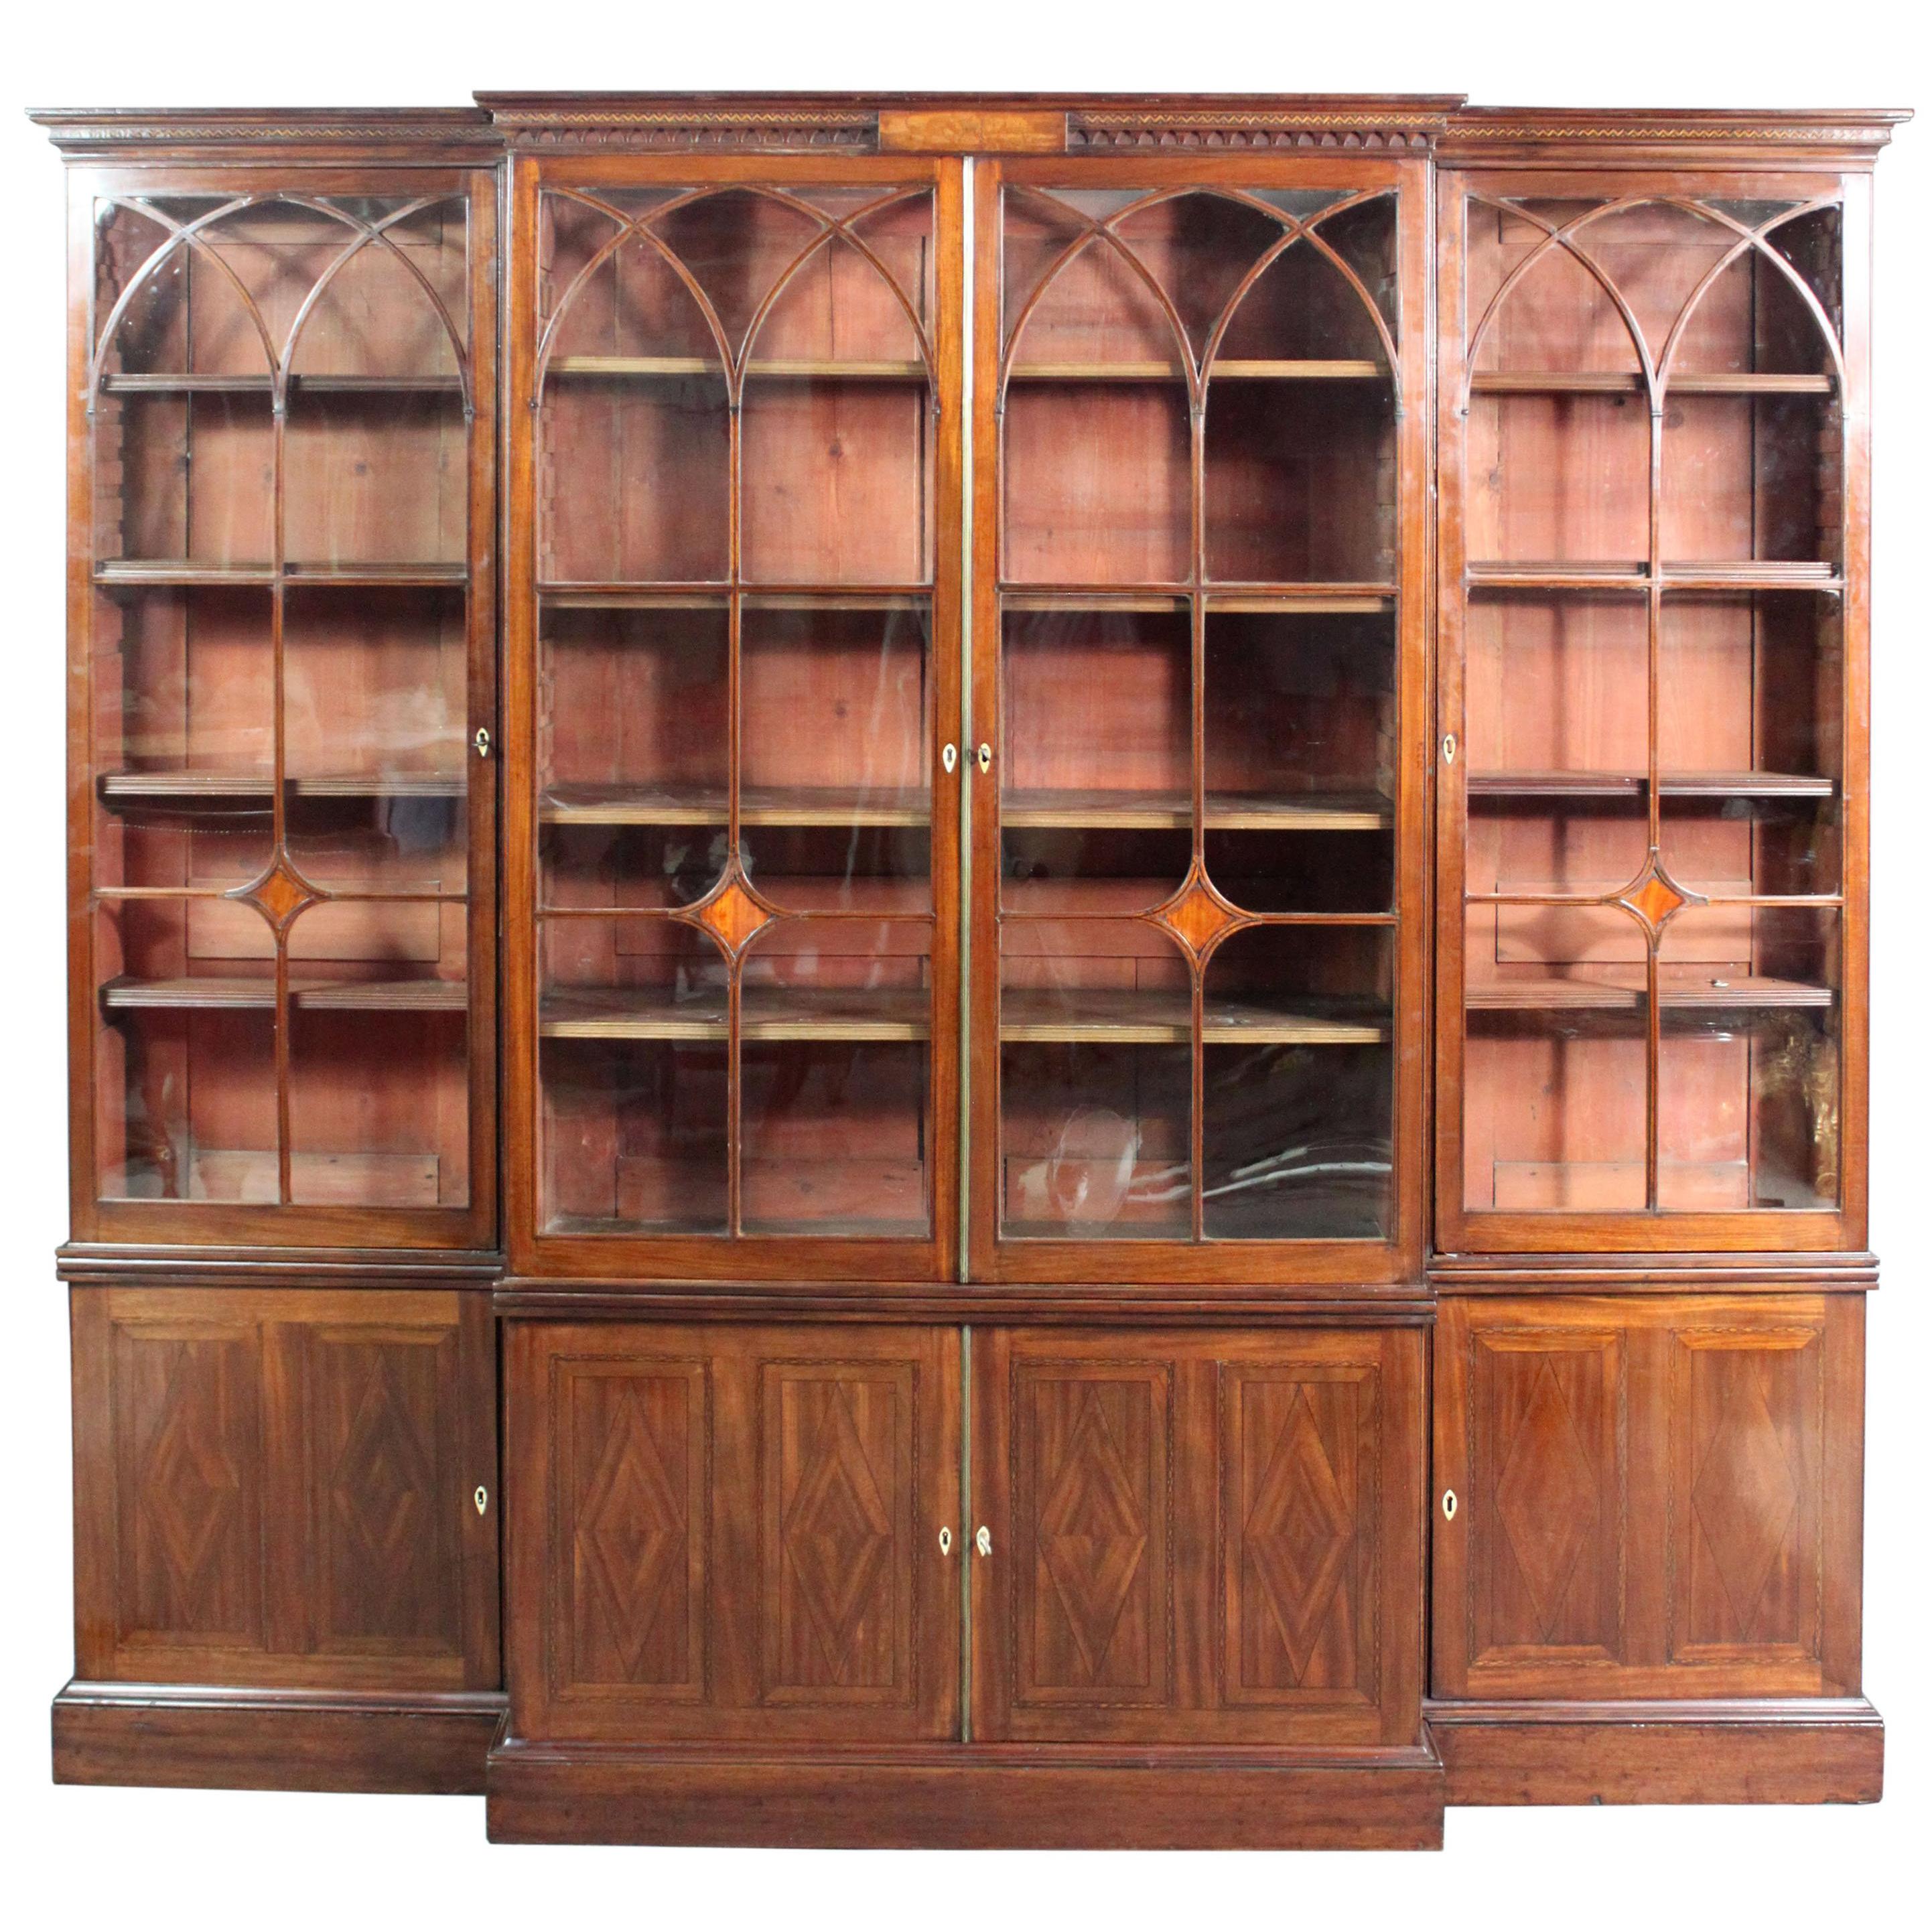 Ein Mahagoni-Bücherregal aus der Zeit von George III. Sheraton mit guter, niedriger Taille, attraktiven, gewölbten Sprossen mit Intarsien aus Ebenholz und Satinholz, die zu den Intarsien in den Türen des Sockels passen, zerlegbar in 3 vertikale